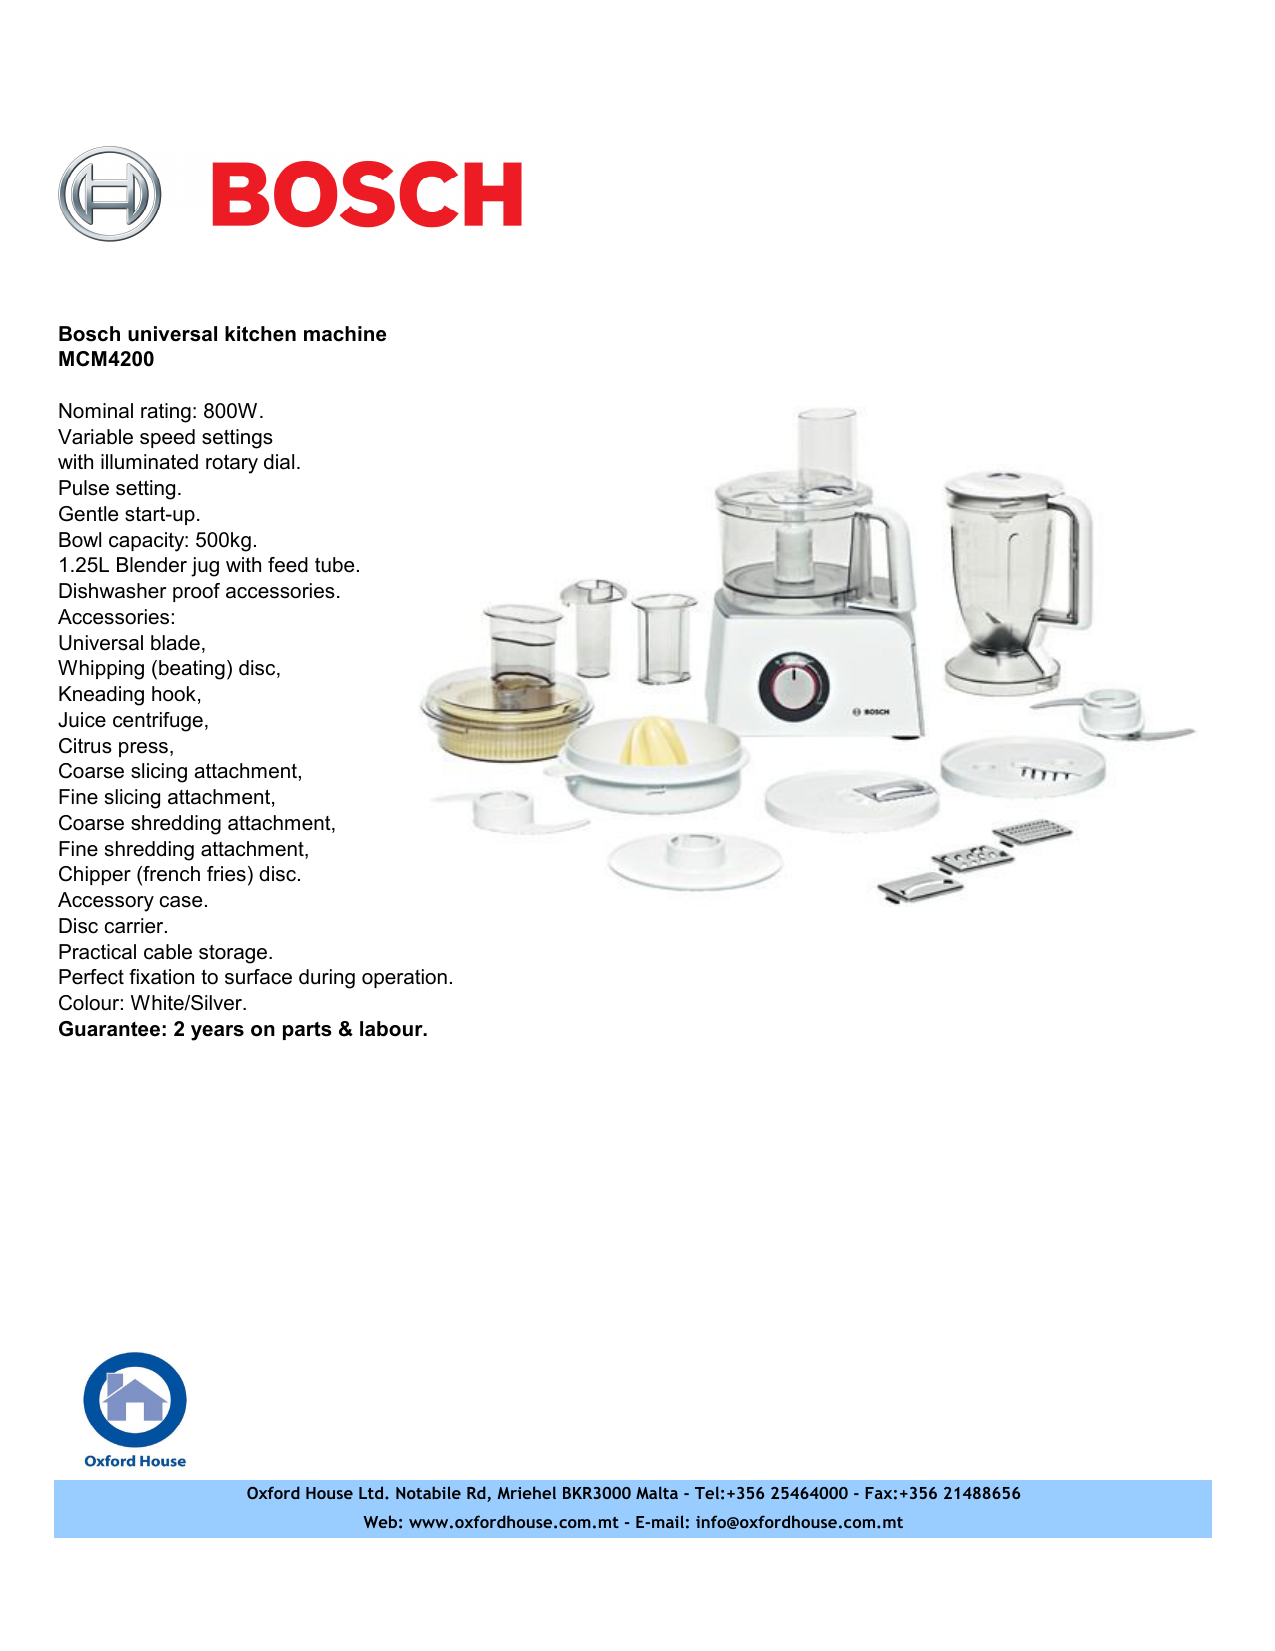 Bosch Universal Kitchen Machine Mcm4200